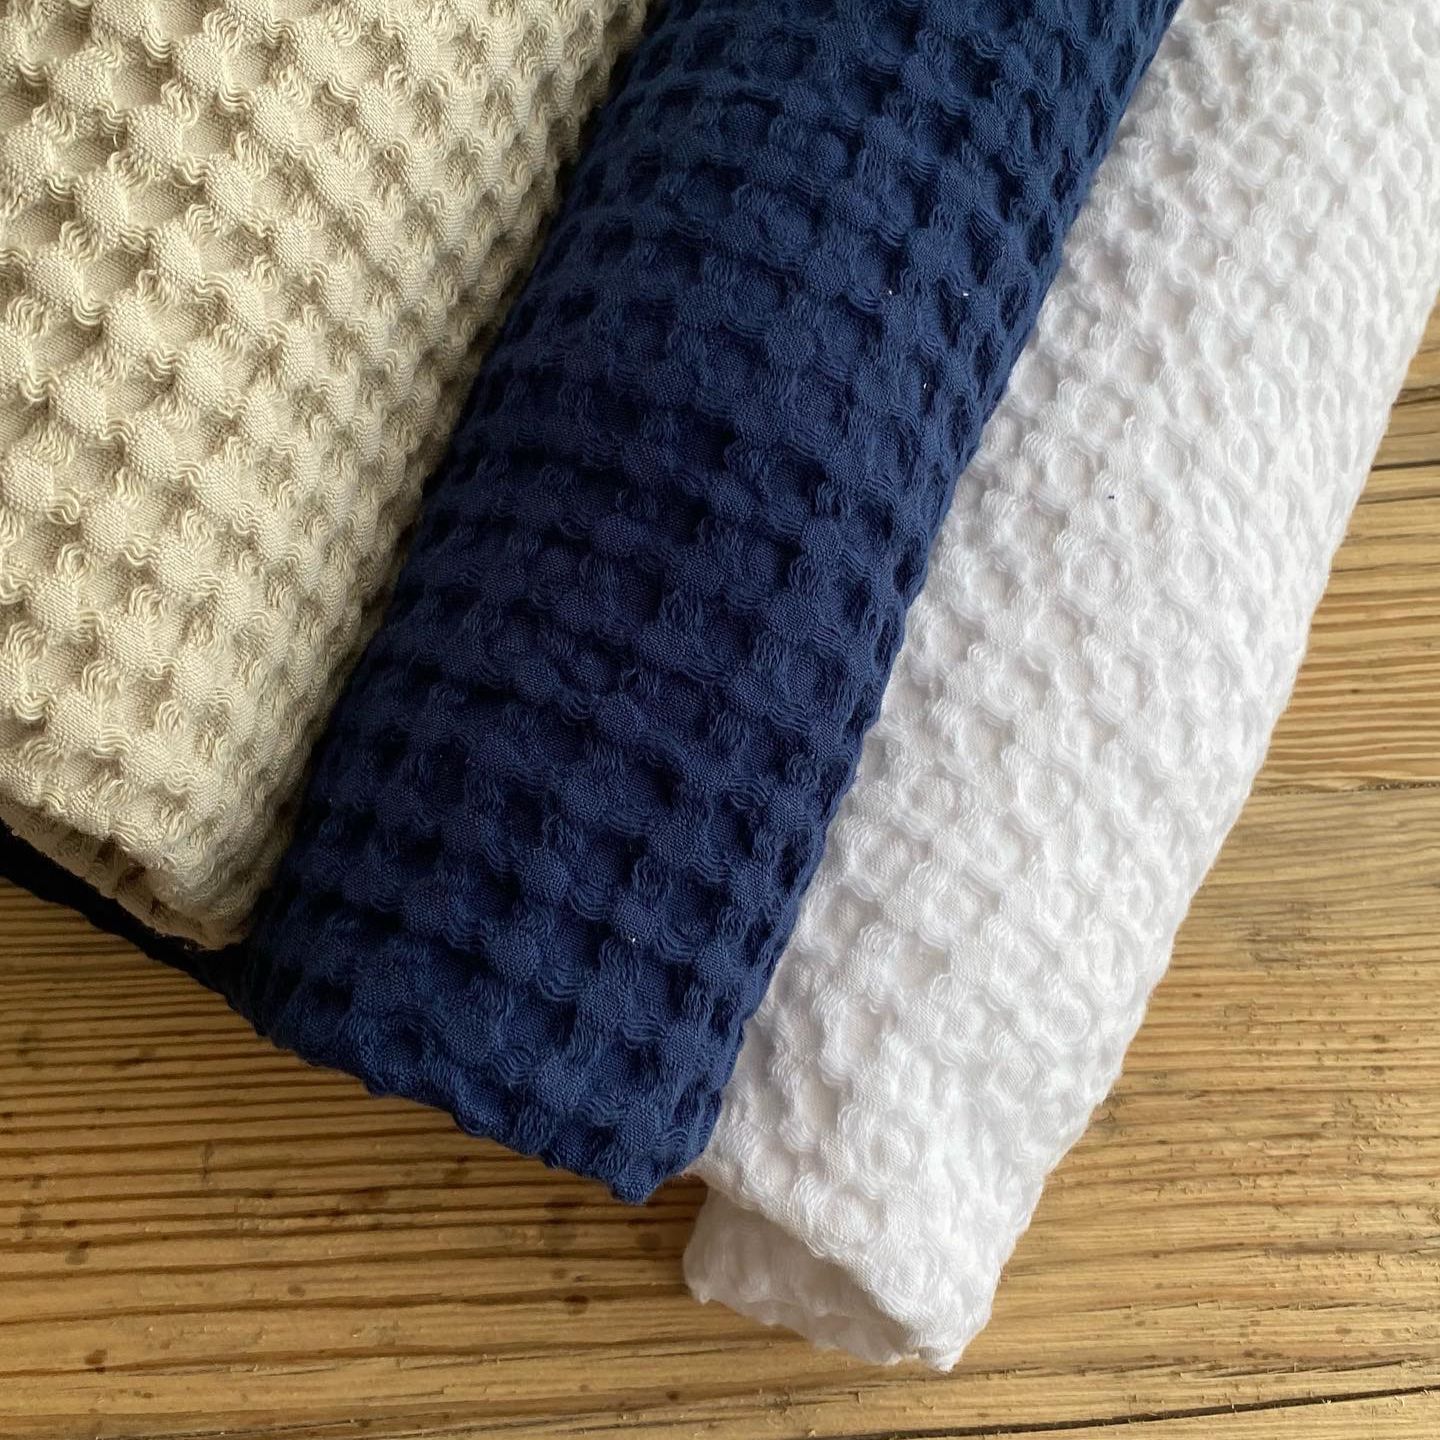 Asciugamani spugna di cotone Nido d'ape Club bianco blu sabbia